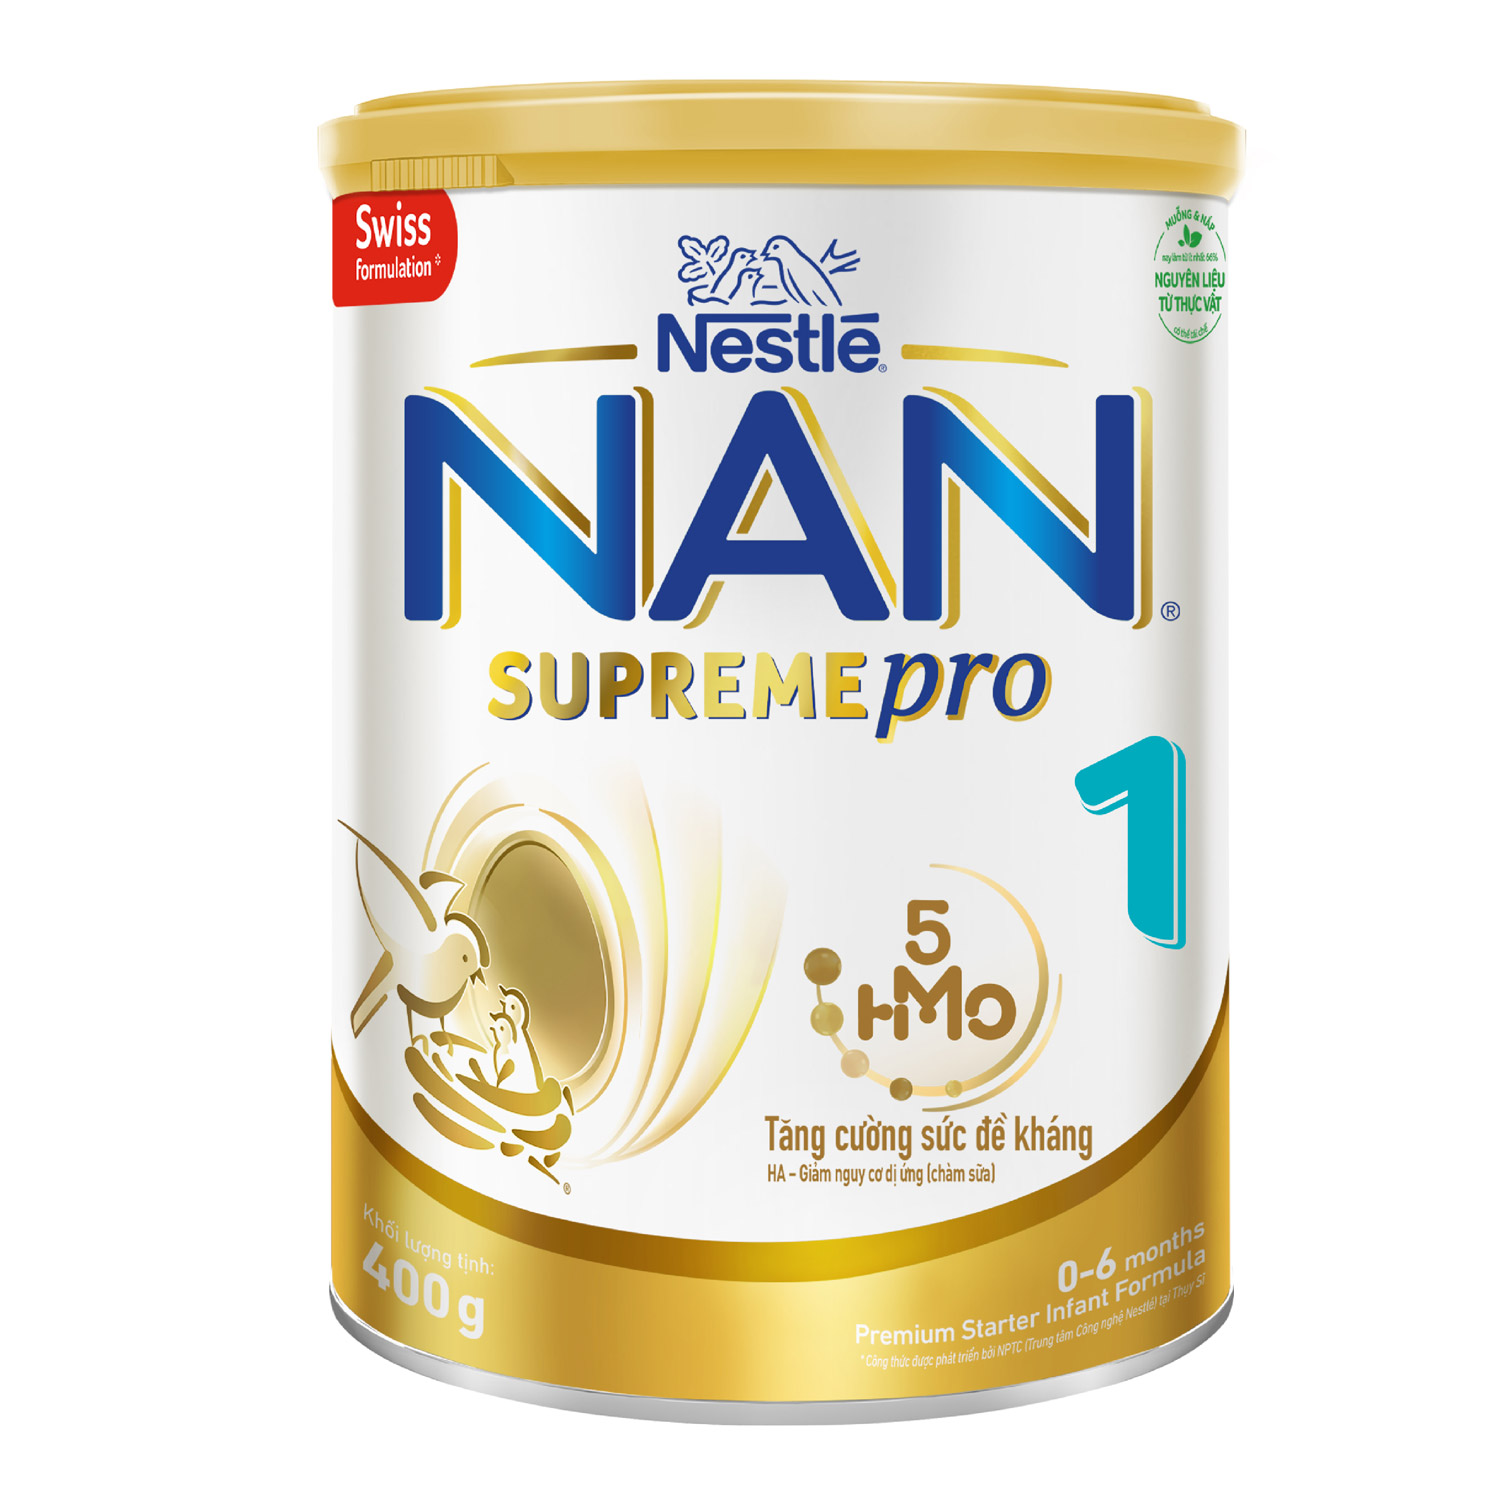 Hình ảnh sữa Nan Supreme Số 1 5HMO 400g New